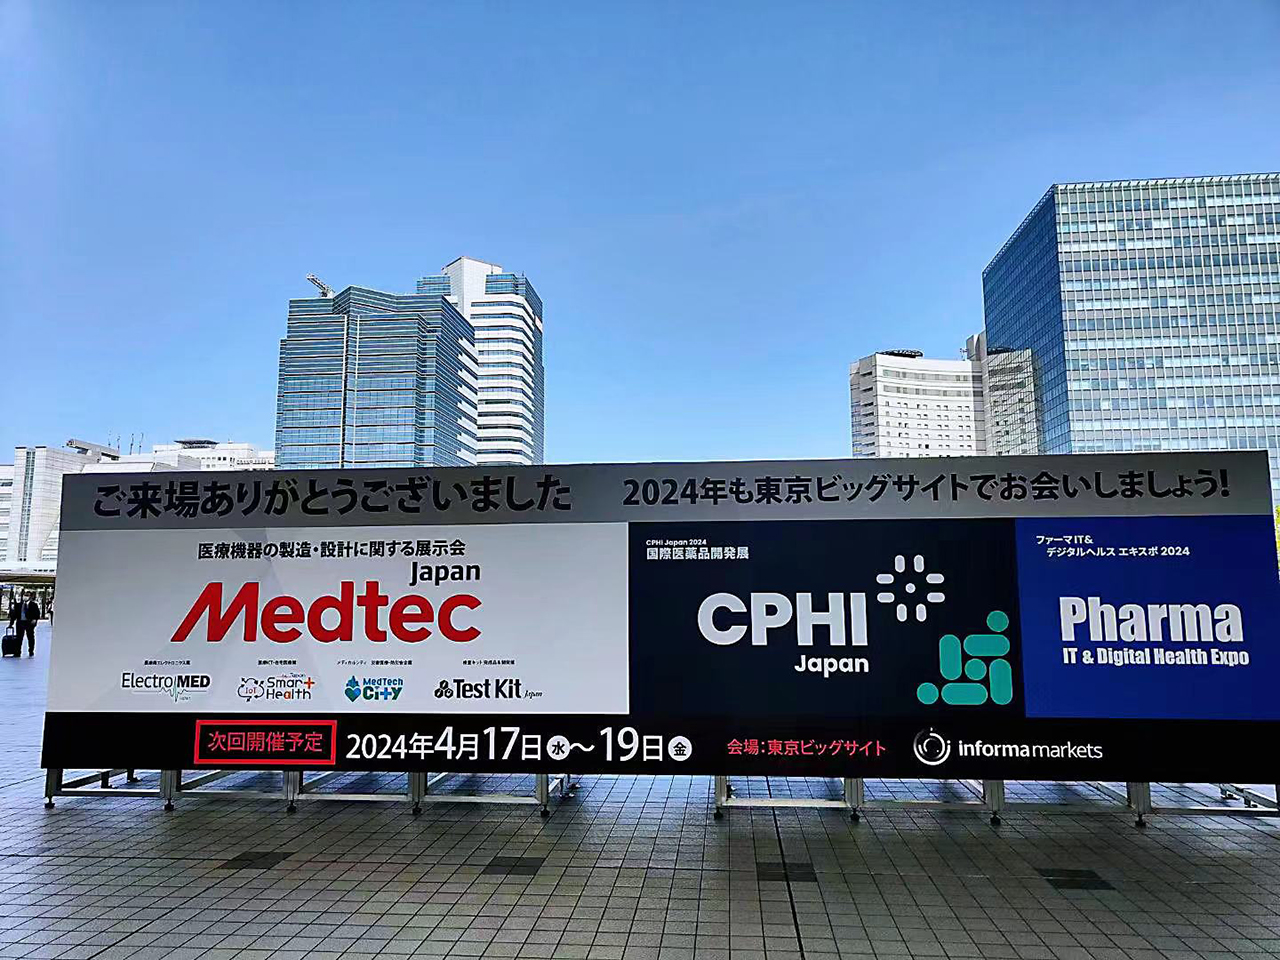 CPHI JAPAN 2023 (17 באפריל-19 באפריל, 2023)